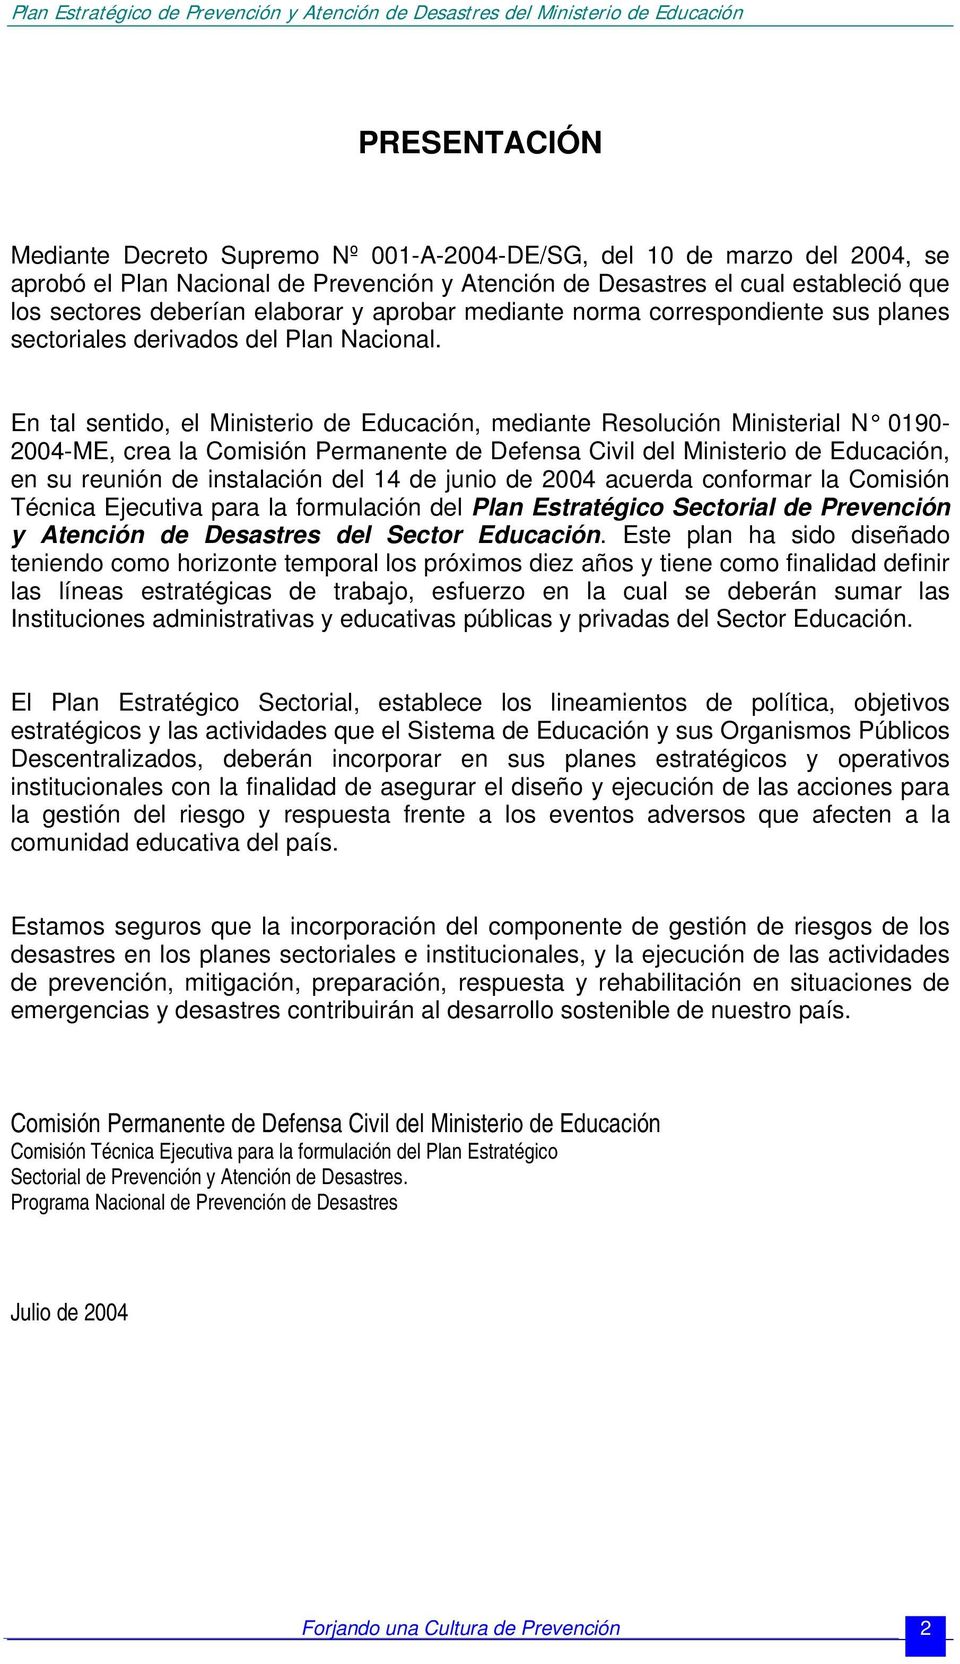 En tal sentido, el Ministerio de Educación, mediante Resolución Ministerial N 0190-2004-ME, crea la Comisión Permanente de Defensa Civil del Ministerio de Educación, en su reunión de instalación del